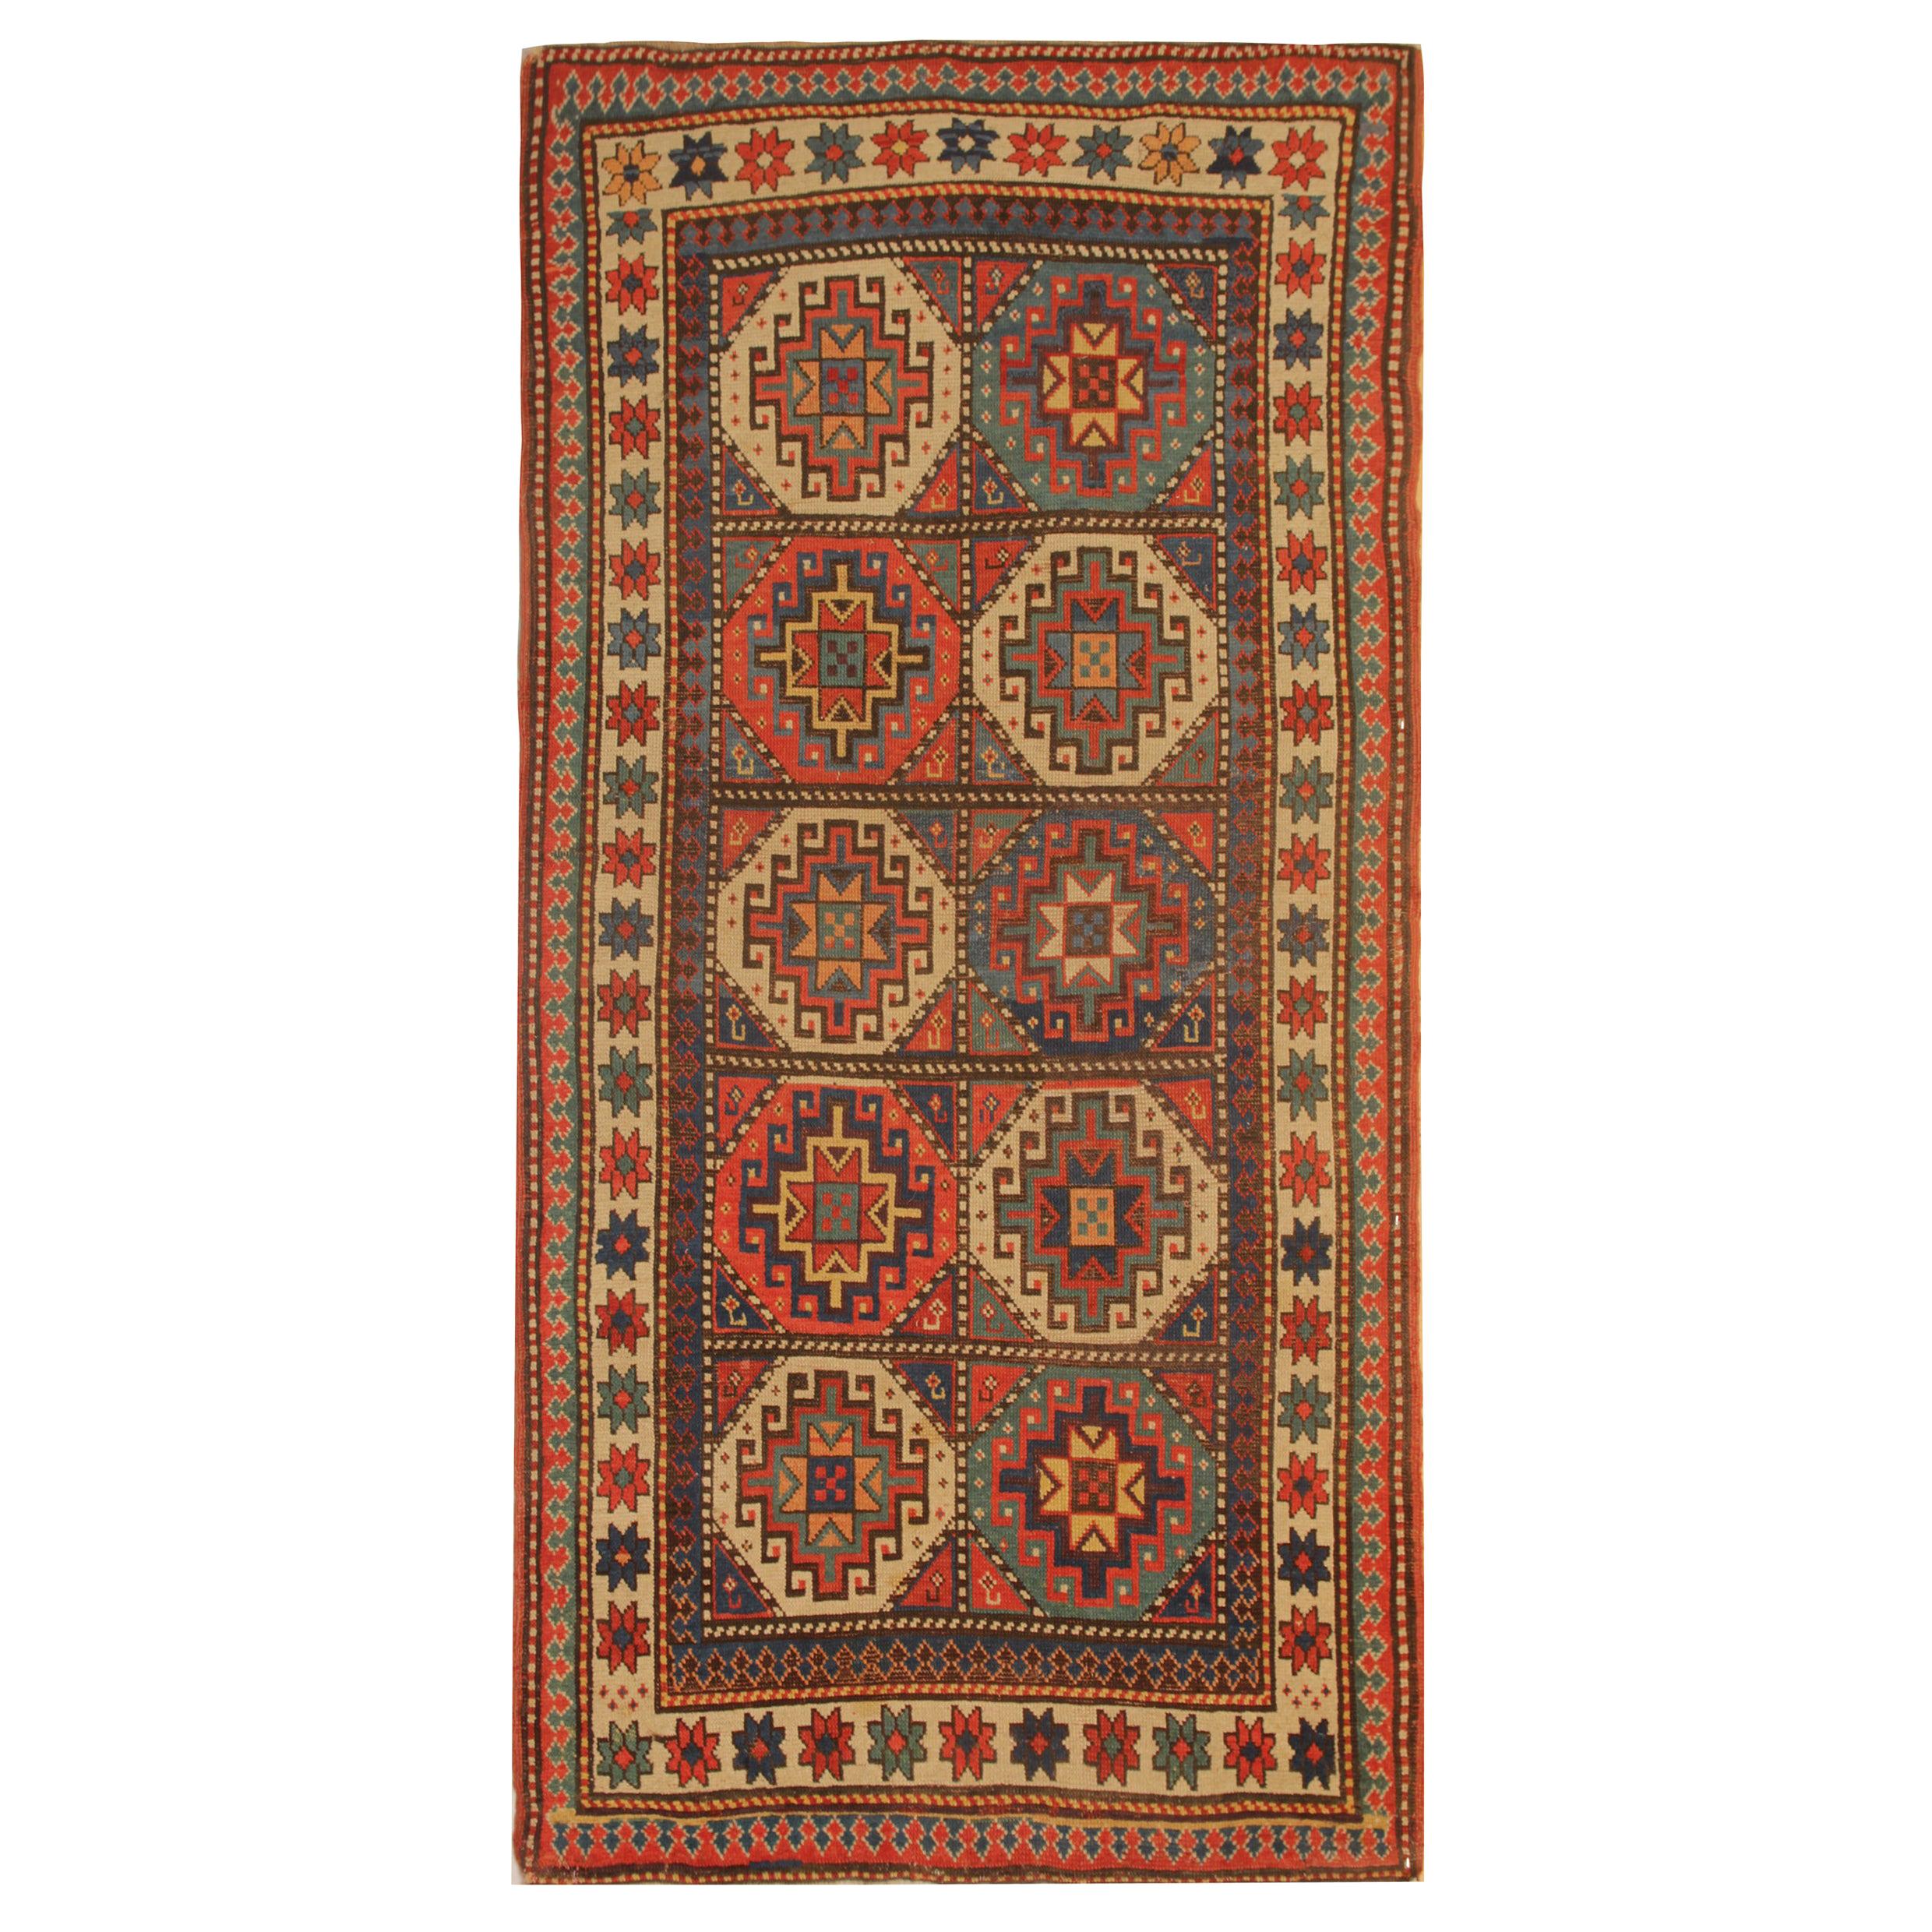 Seltener antiker kaukasischer Orientteppich, handgefertigter Teppich aus Kasachischem Gebiet, Teppich